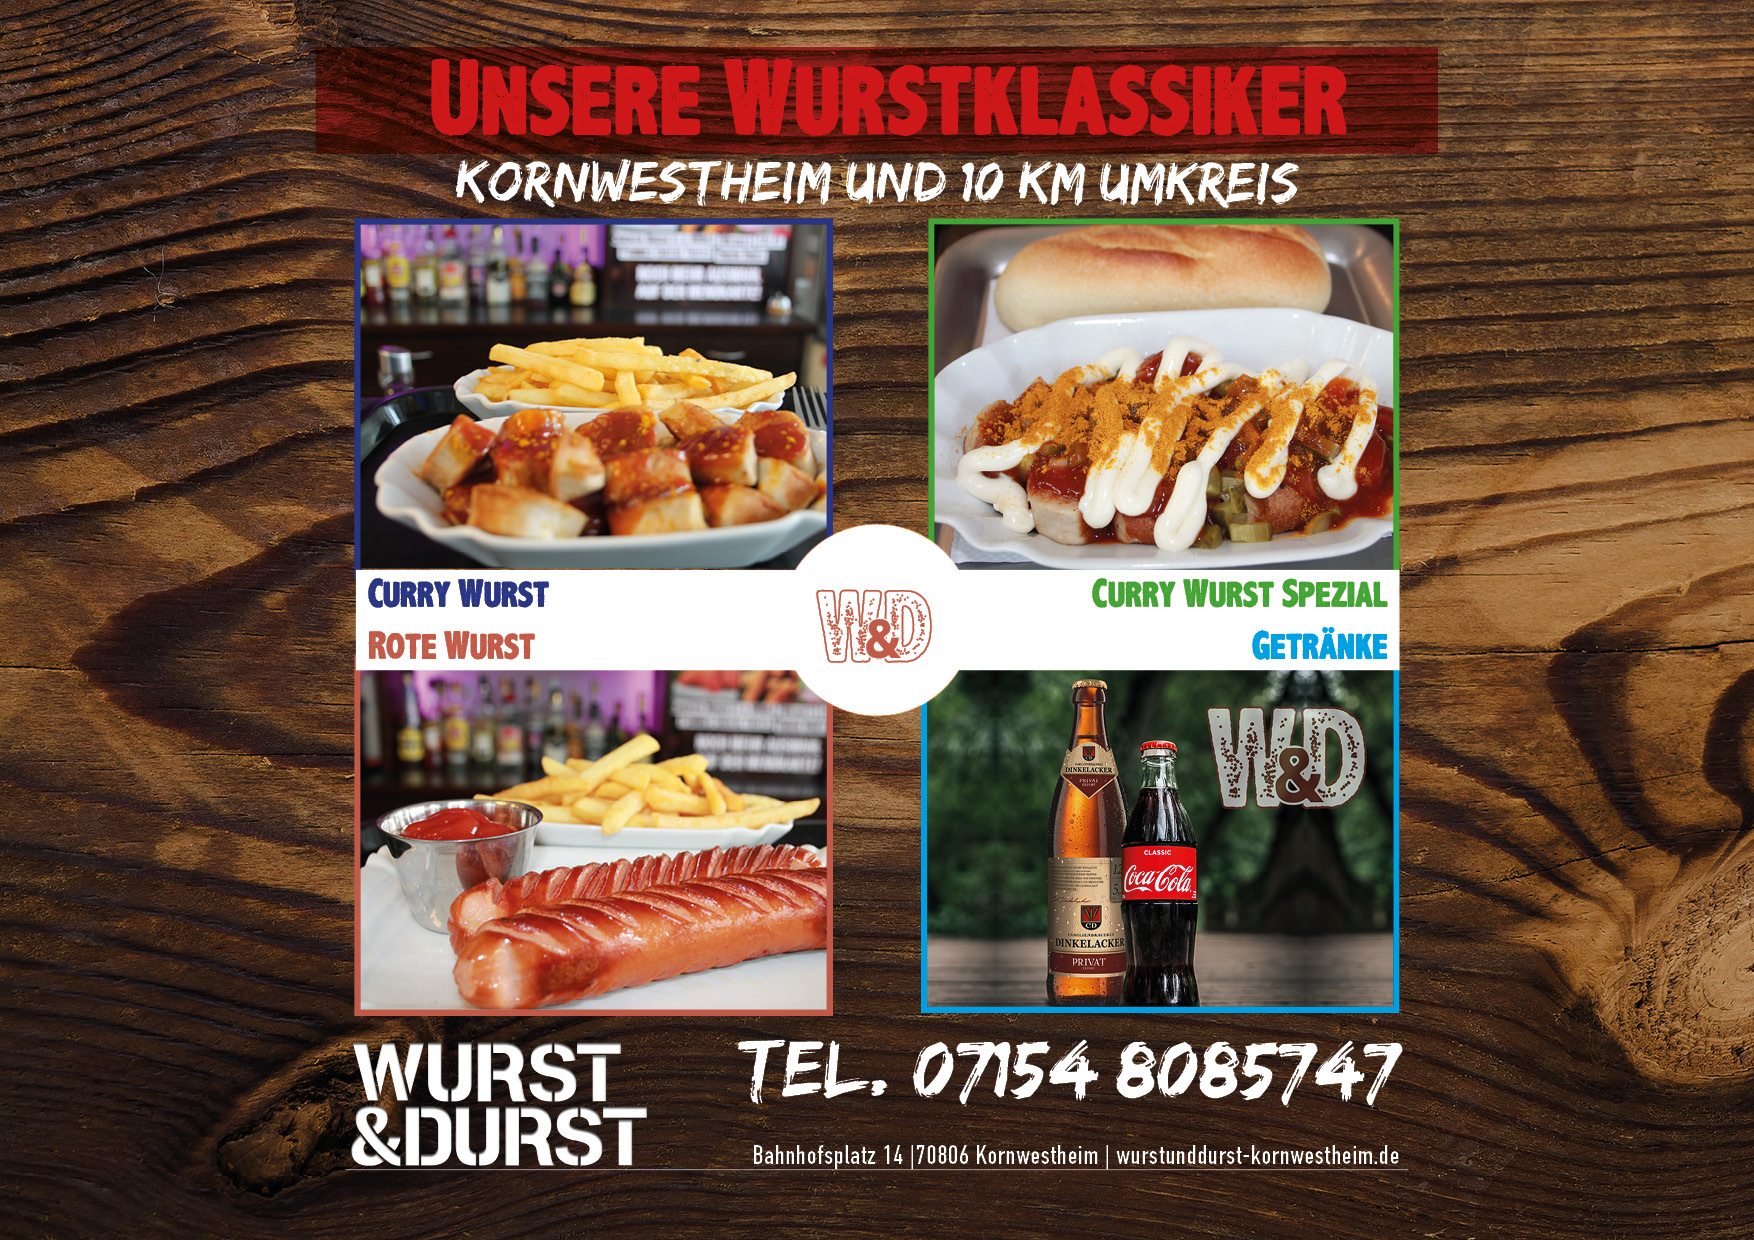 Wurstklassiker bei Wurst & Durst Kornwestheim, Rote Wurst, Curry Wurst, Curry Wurst Spezial